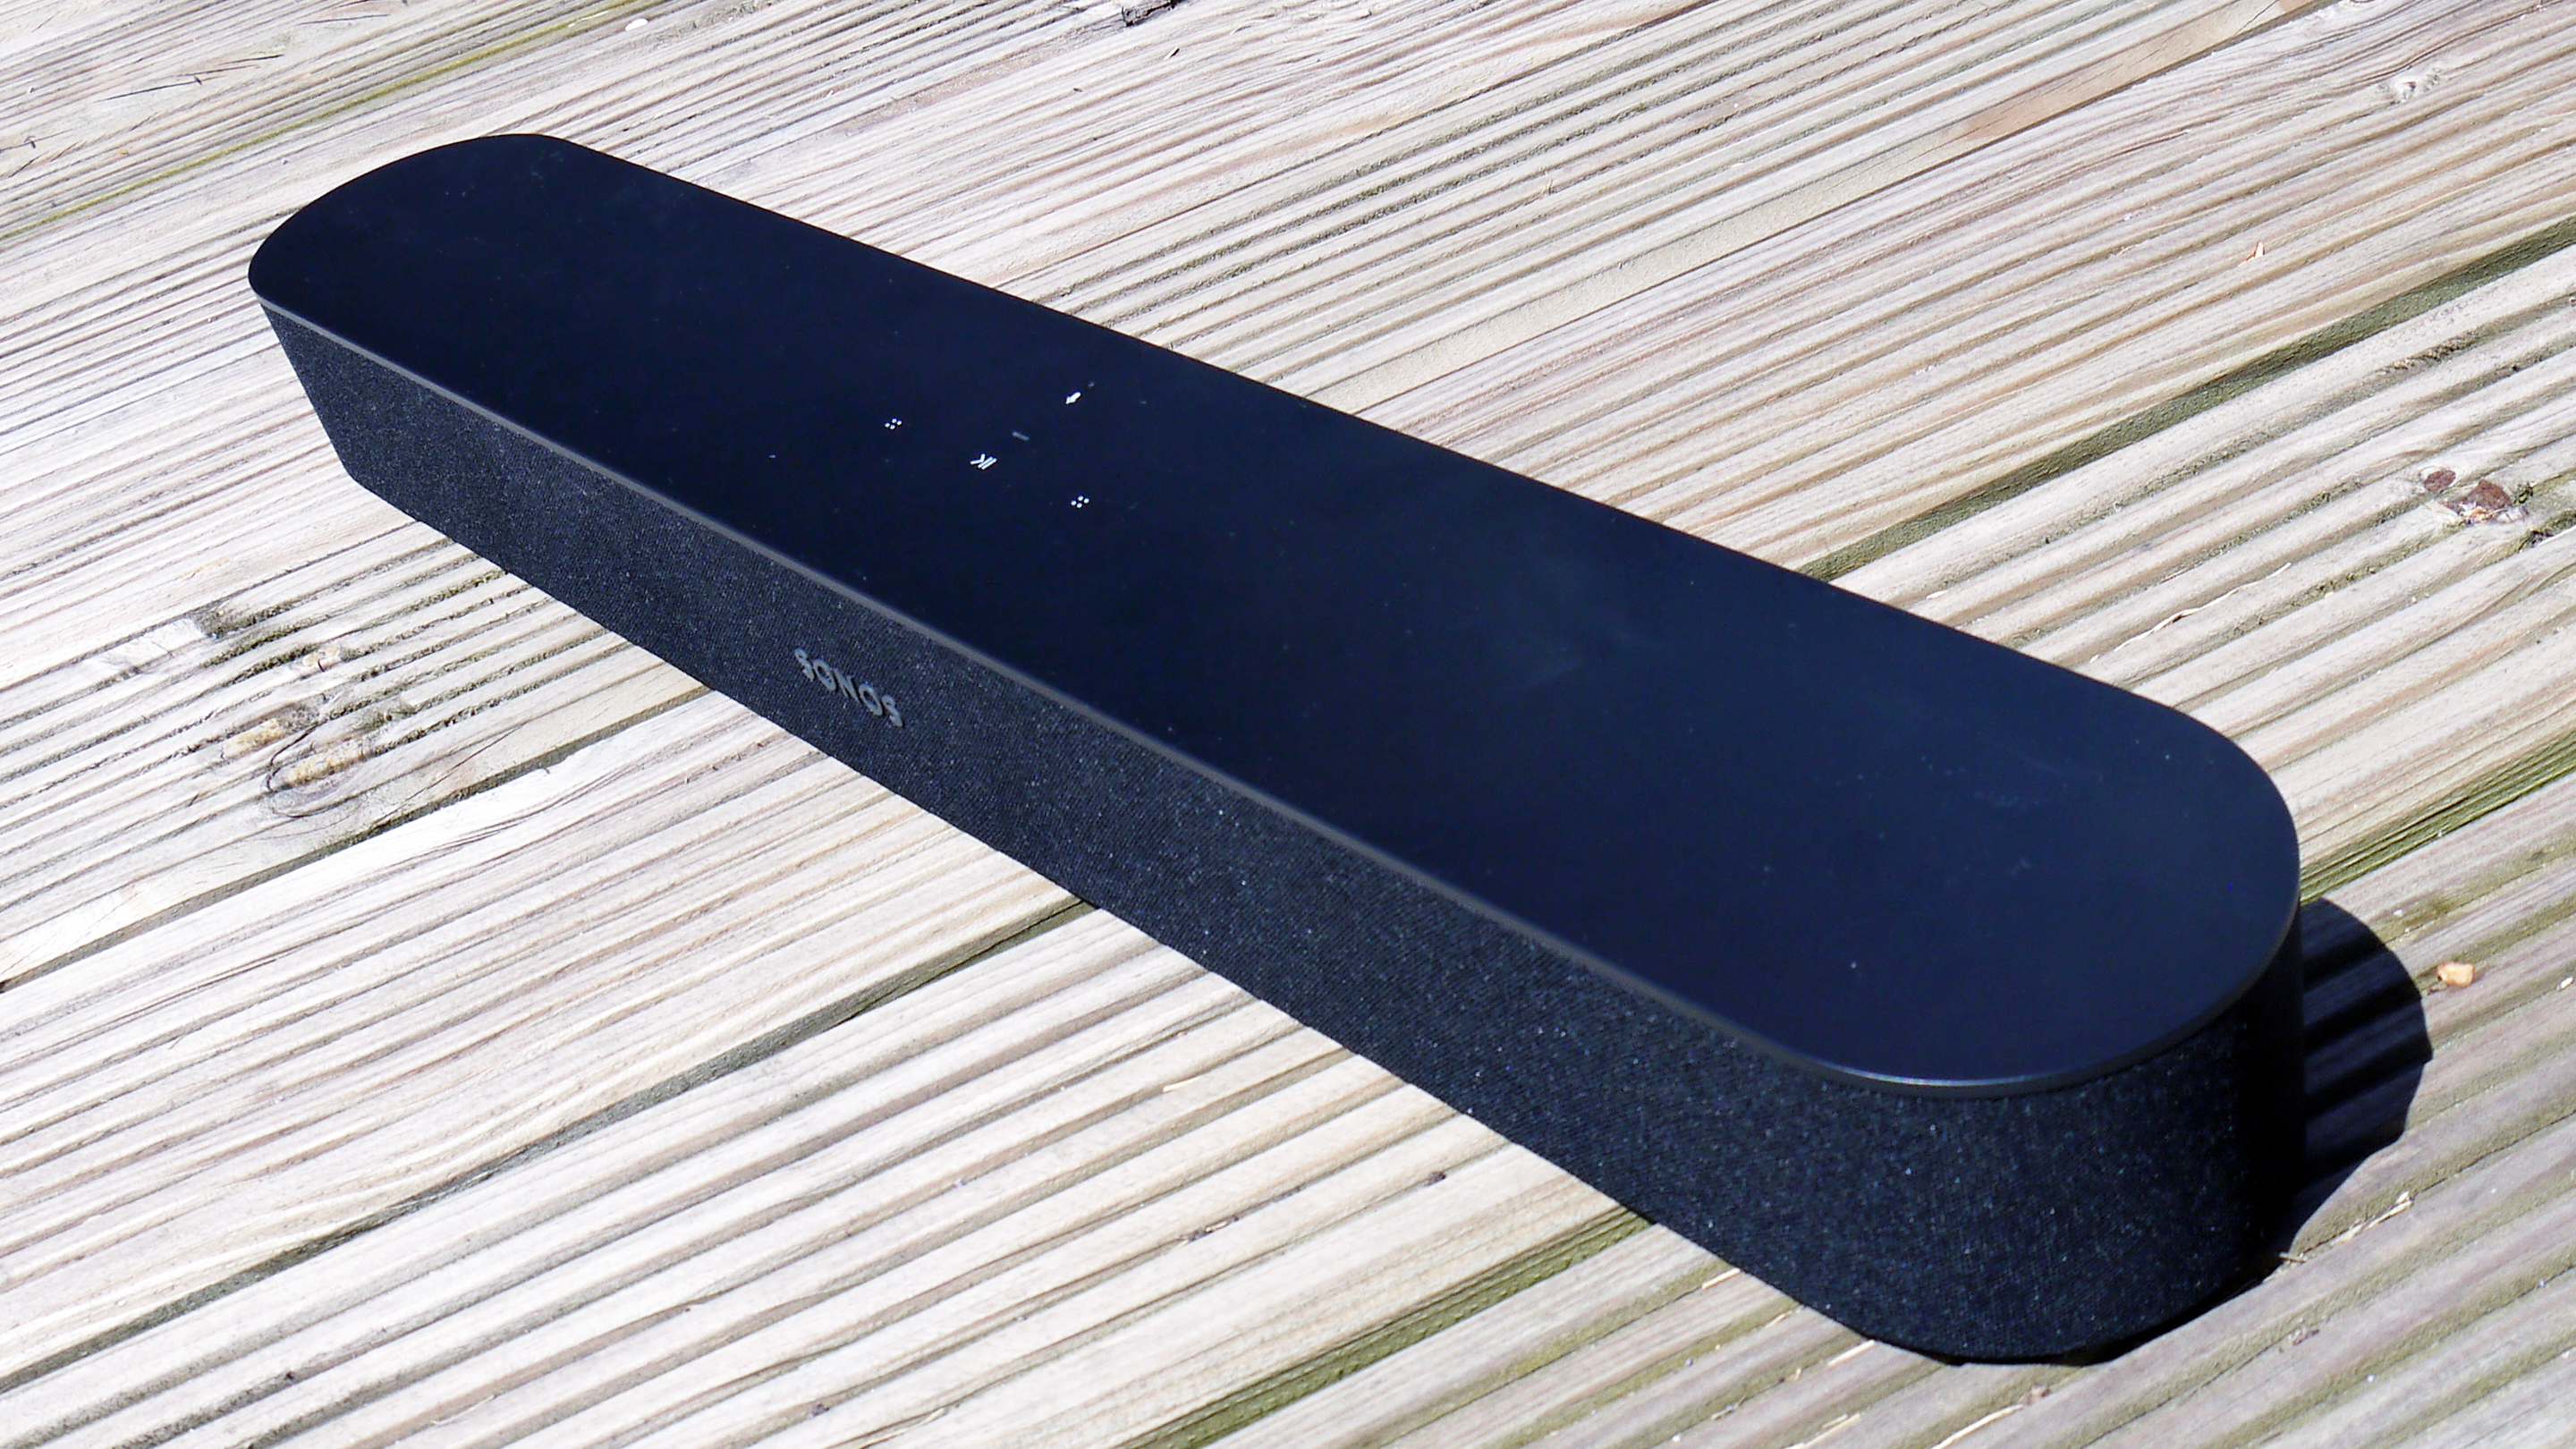 The Sonos балка черного цвета на деревянной палубе